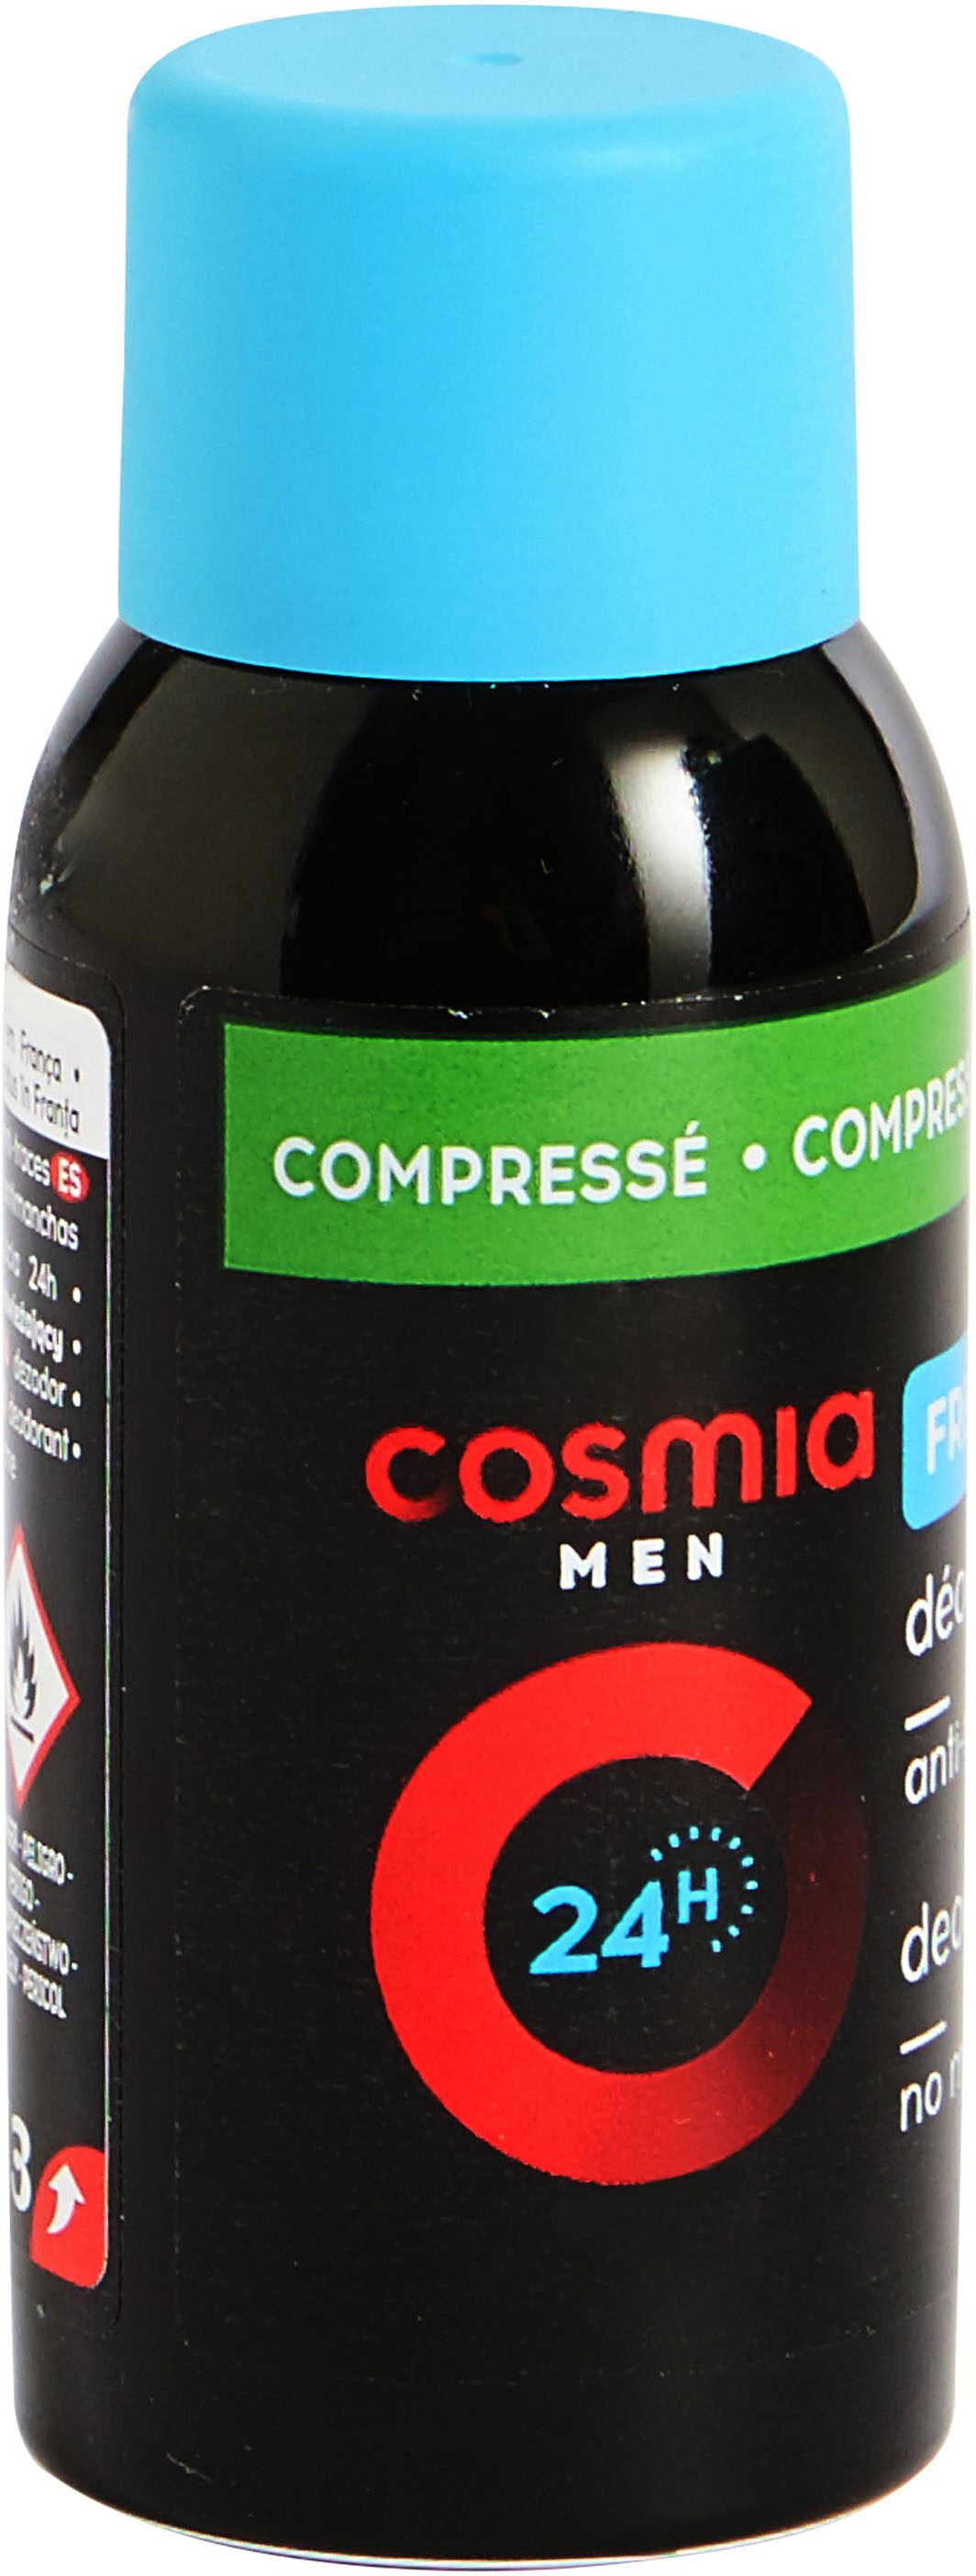 Cosmia deodorant homme atomiseur corps fraicheur 75 ml - نتاج - fr